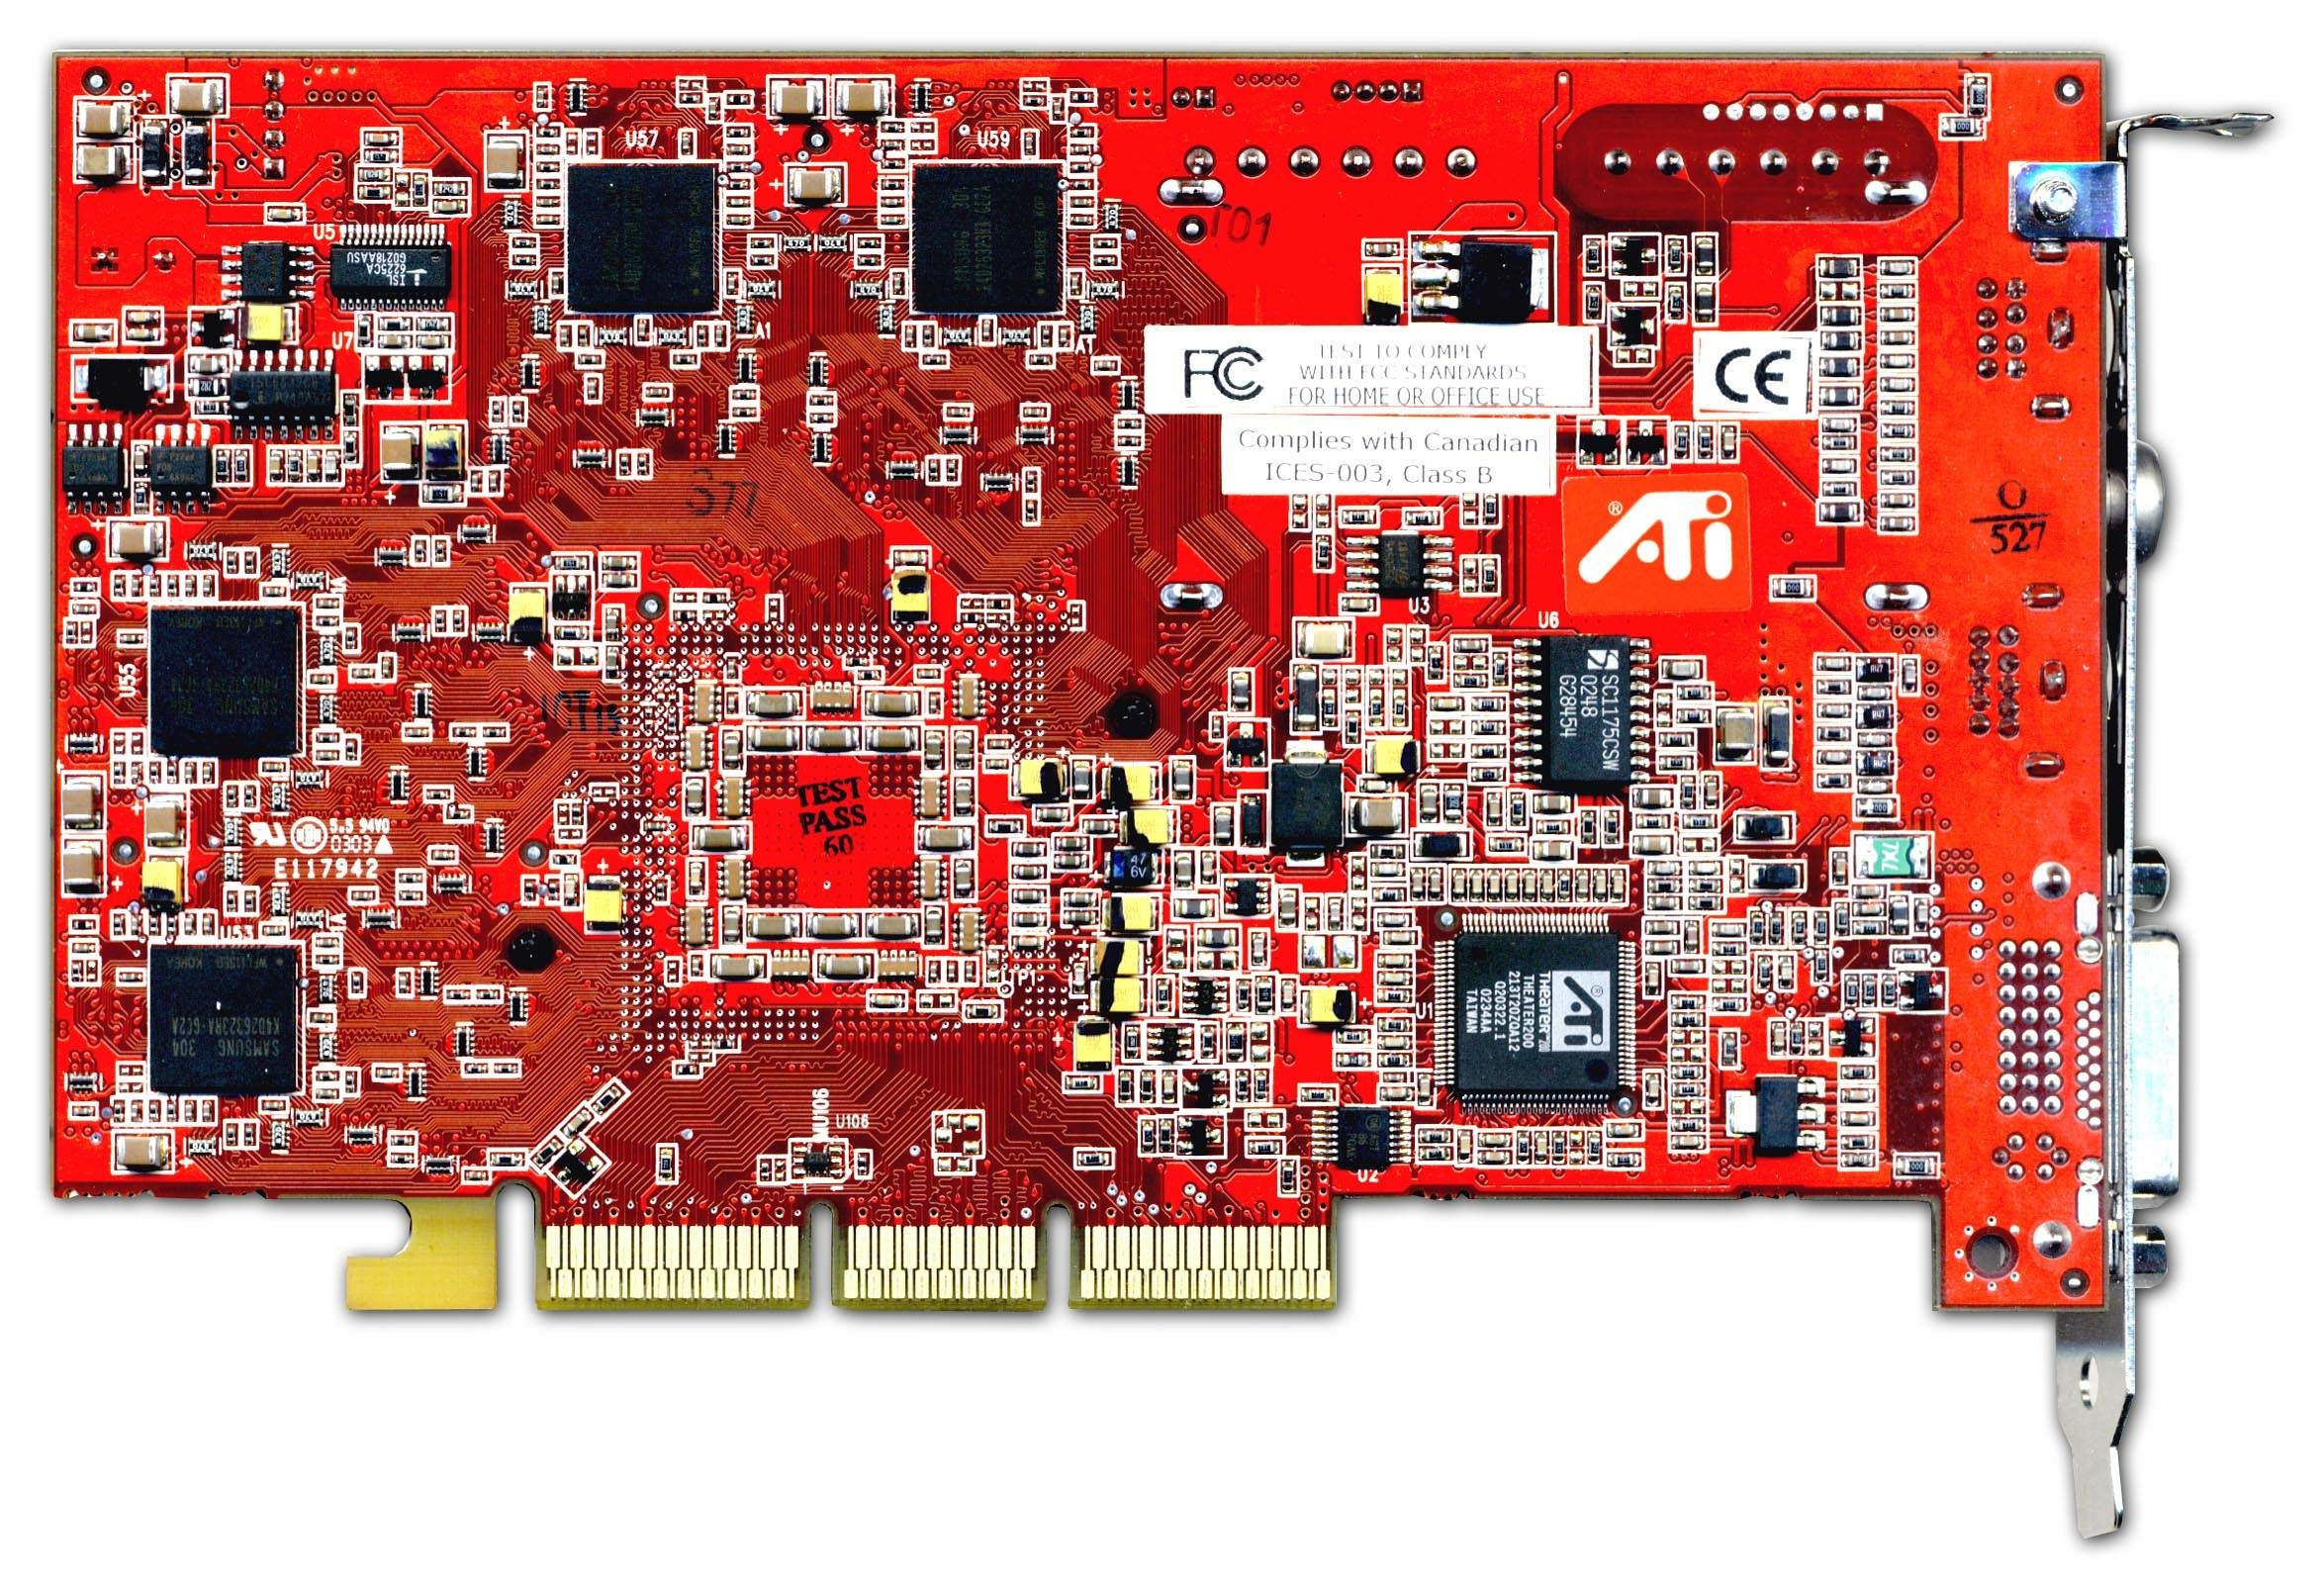 Ati radeon 4300 series. ATI Radeon 9700 Pro. ATI hd4300. Видеокарта ATI Radeon all-in-Wonder x800.